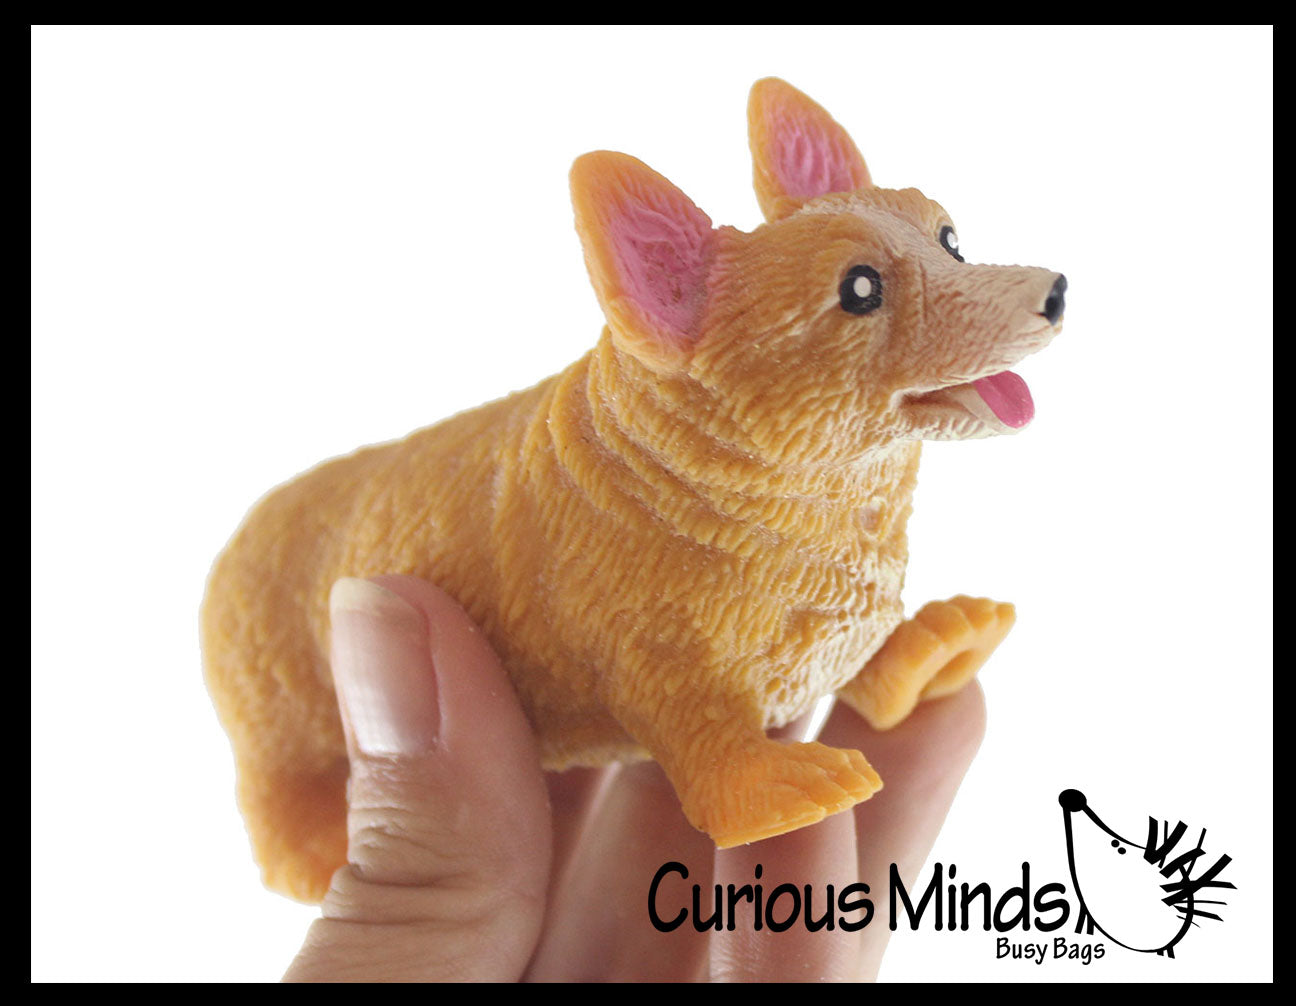 Corgi Dog Plush Toy – Big Squishies